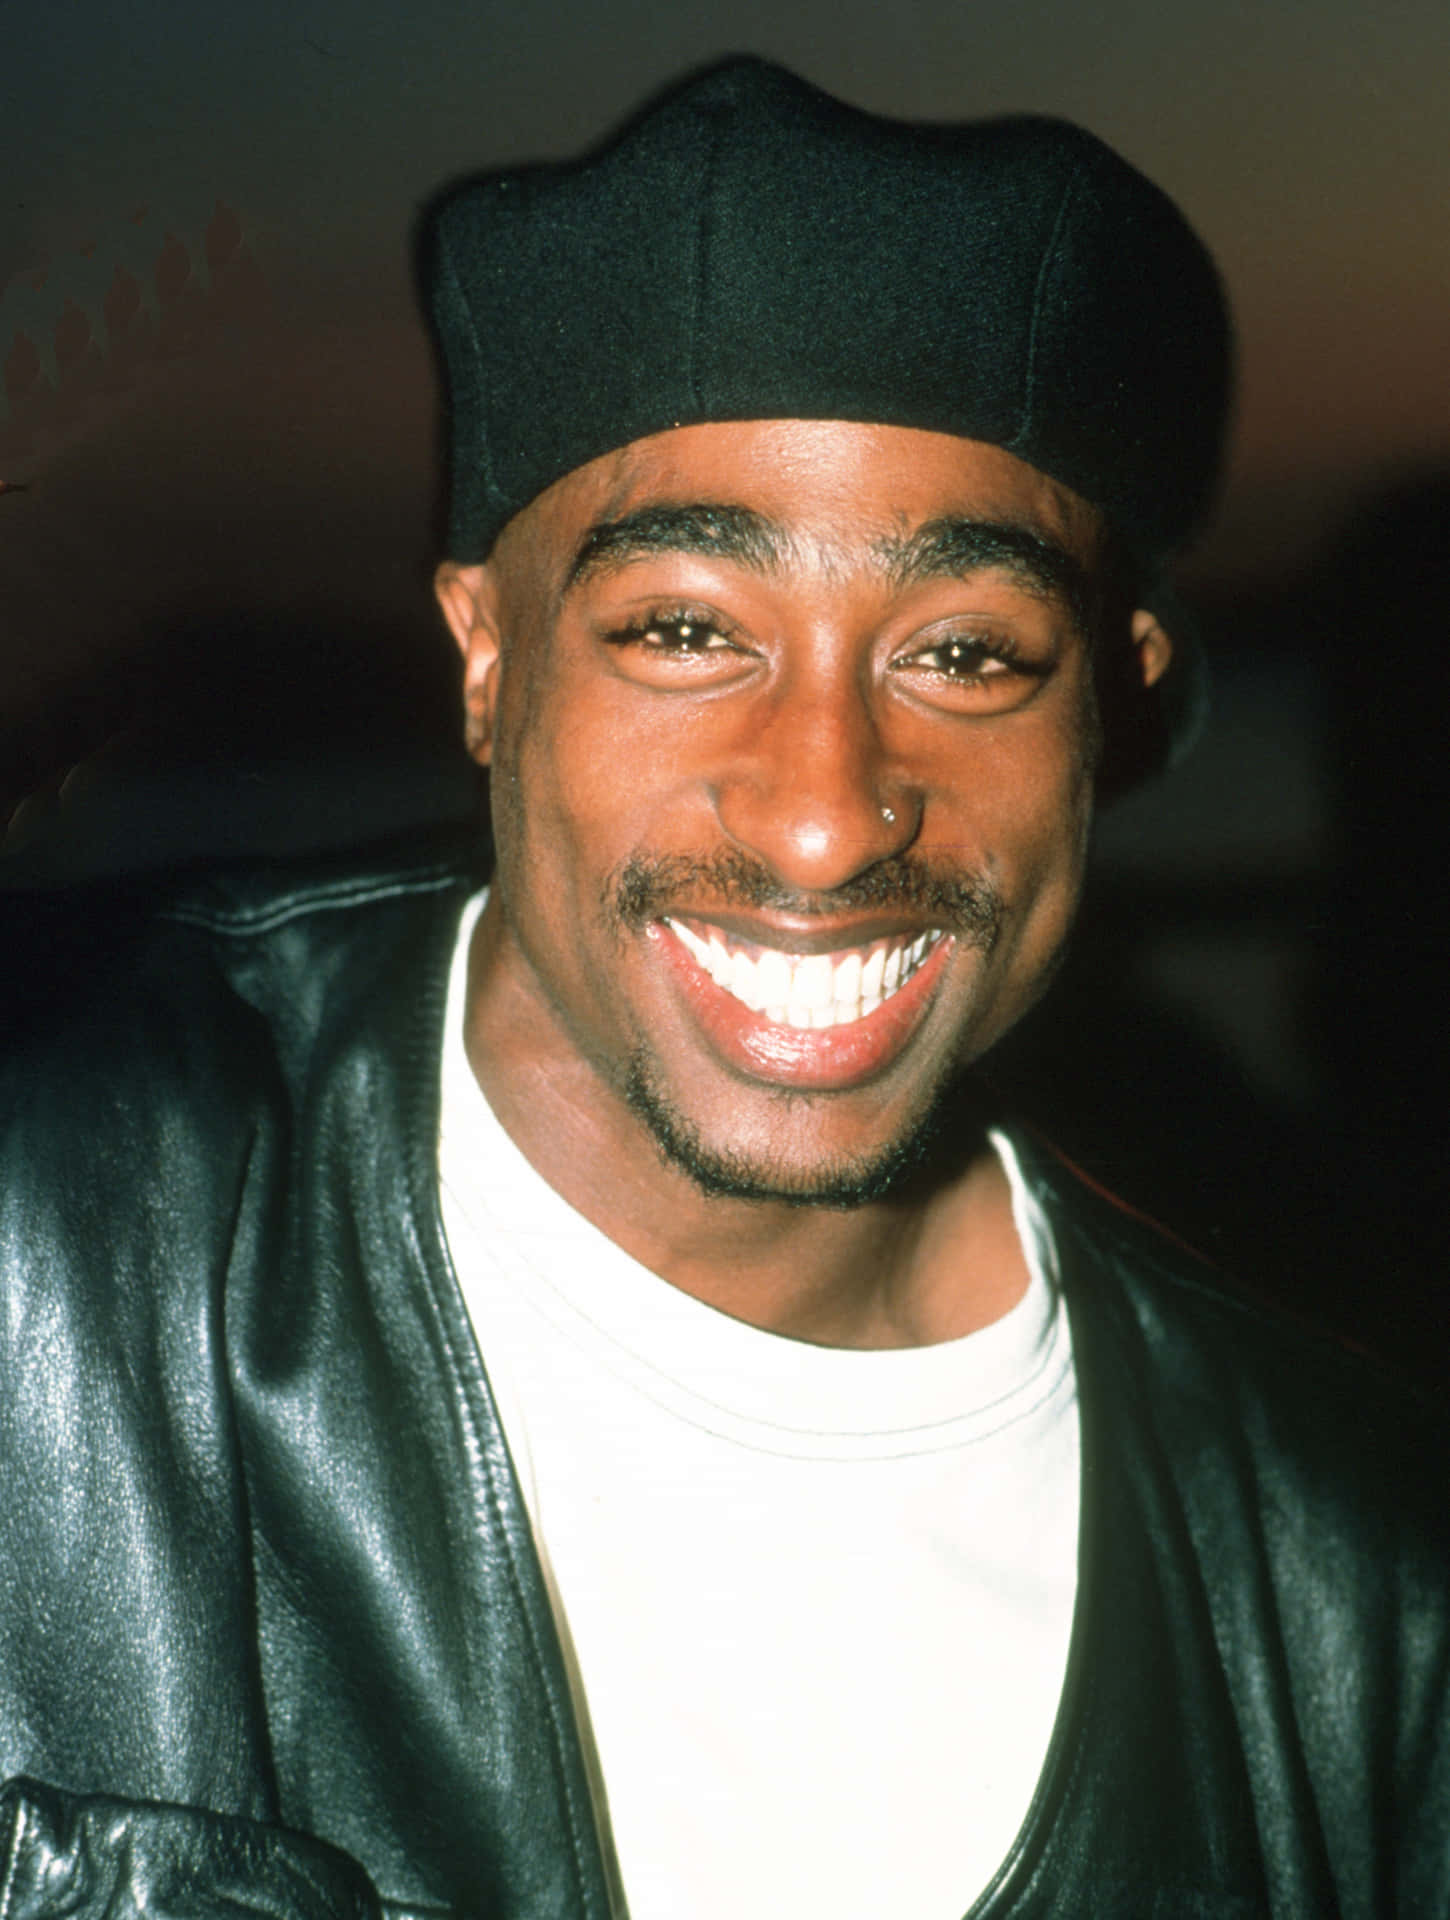 Daserbe Von Tupac Shakur Lebt Weiter.